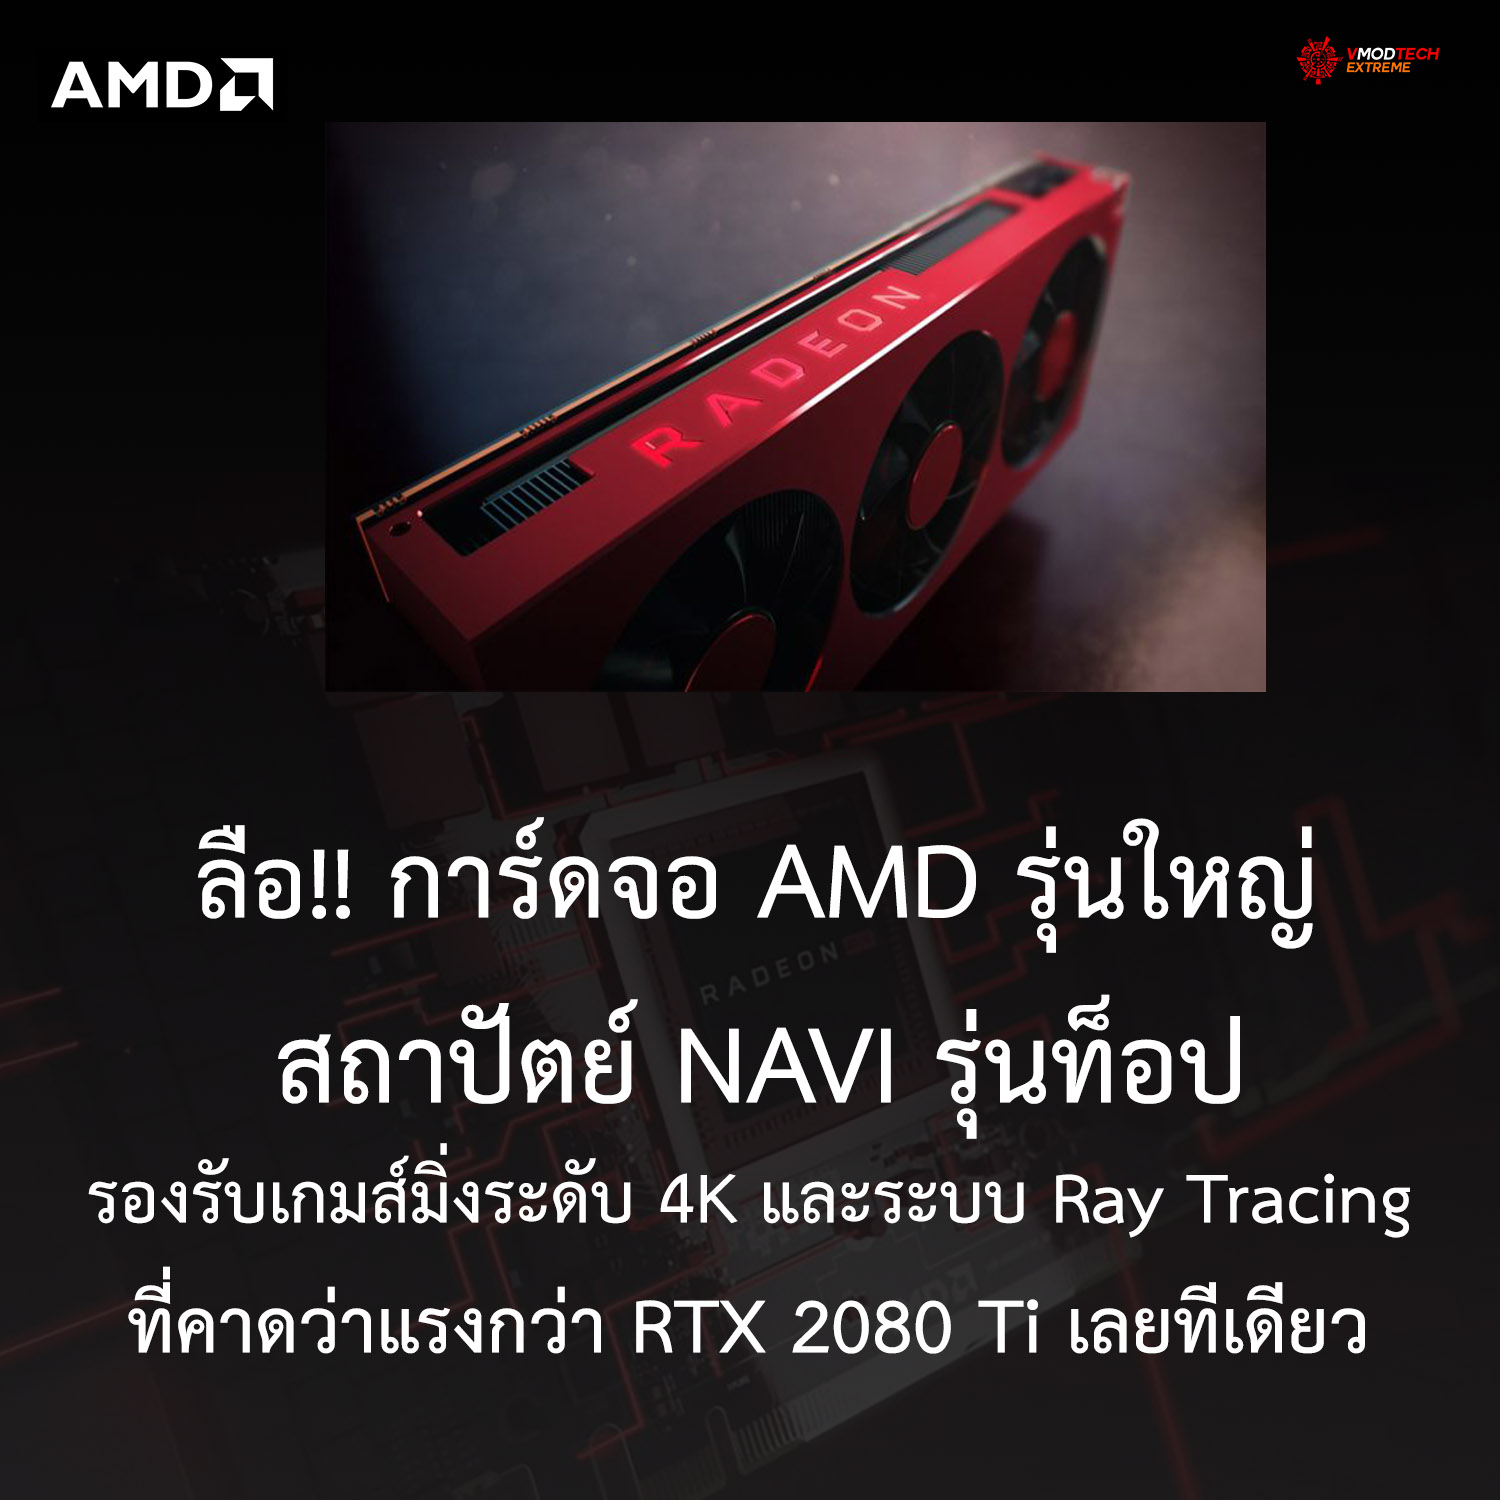 big navi 4k ลือ!! AMD กำลังสร้างปรากฏการณ์ใหม่ในการ์ดจอรุ่นใหญ่ NAVI ที่รองรับ 4K แบบเต็มๆพร้อมระบบ Ray Tracing ที่คาดว่าแรงกว่า RTX 2080 Ti เลยทีเดียว